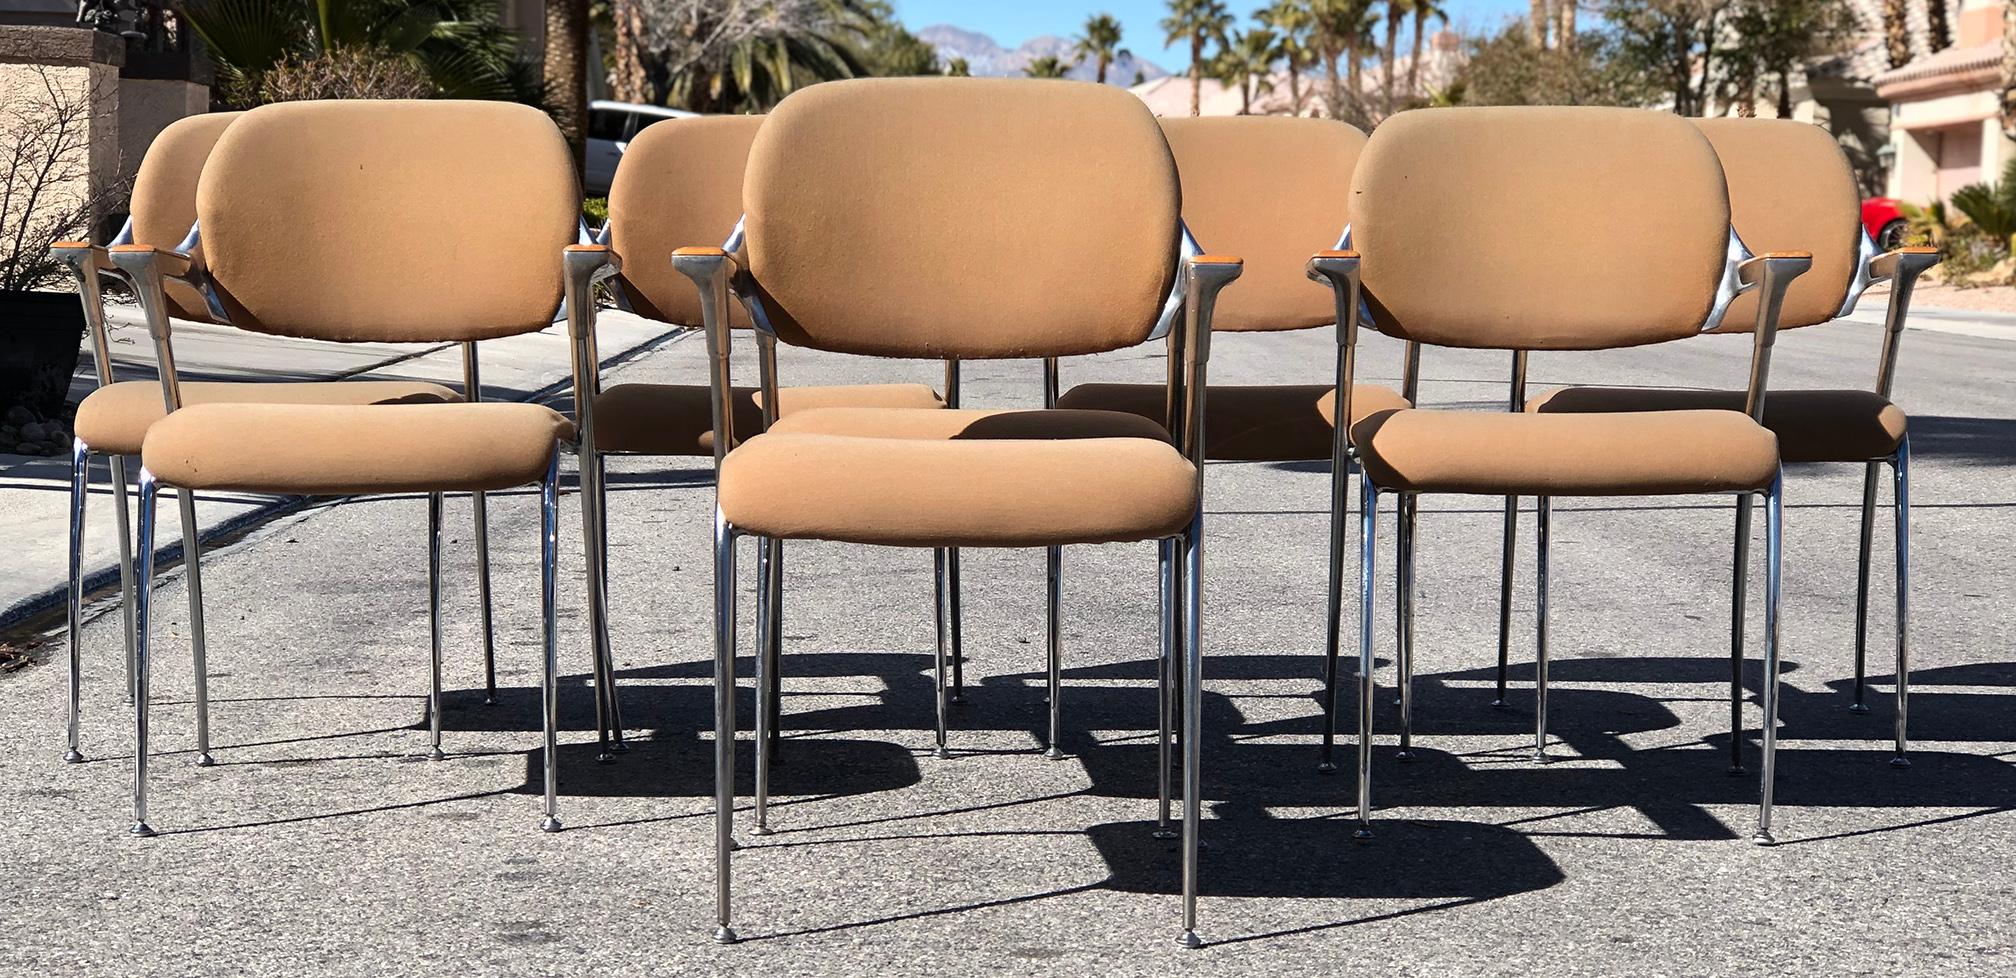 Diese Thonet-Stühle:: die in den 1970er Jahren von Francesco Zaccone für Thonet entworfen wurden:: erinnern stark an den Stil der Gazelle-Stühle von Shelby William. Sie sind geschwungen:: schlank und aus fast jedem Blickwinkel attraktiv. Diese